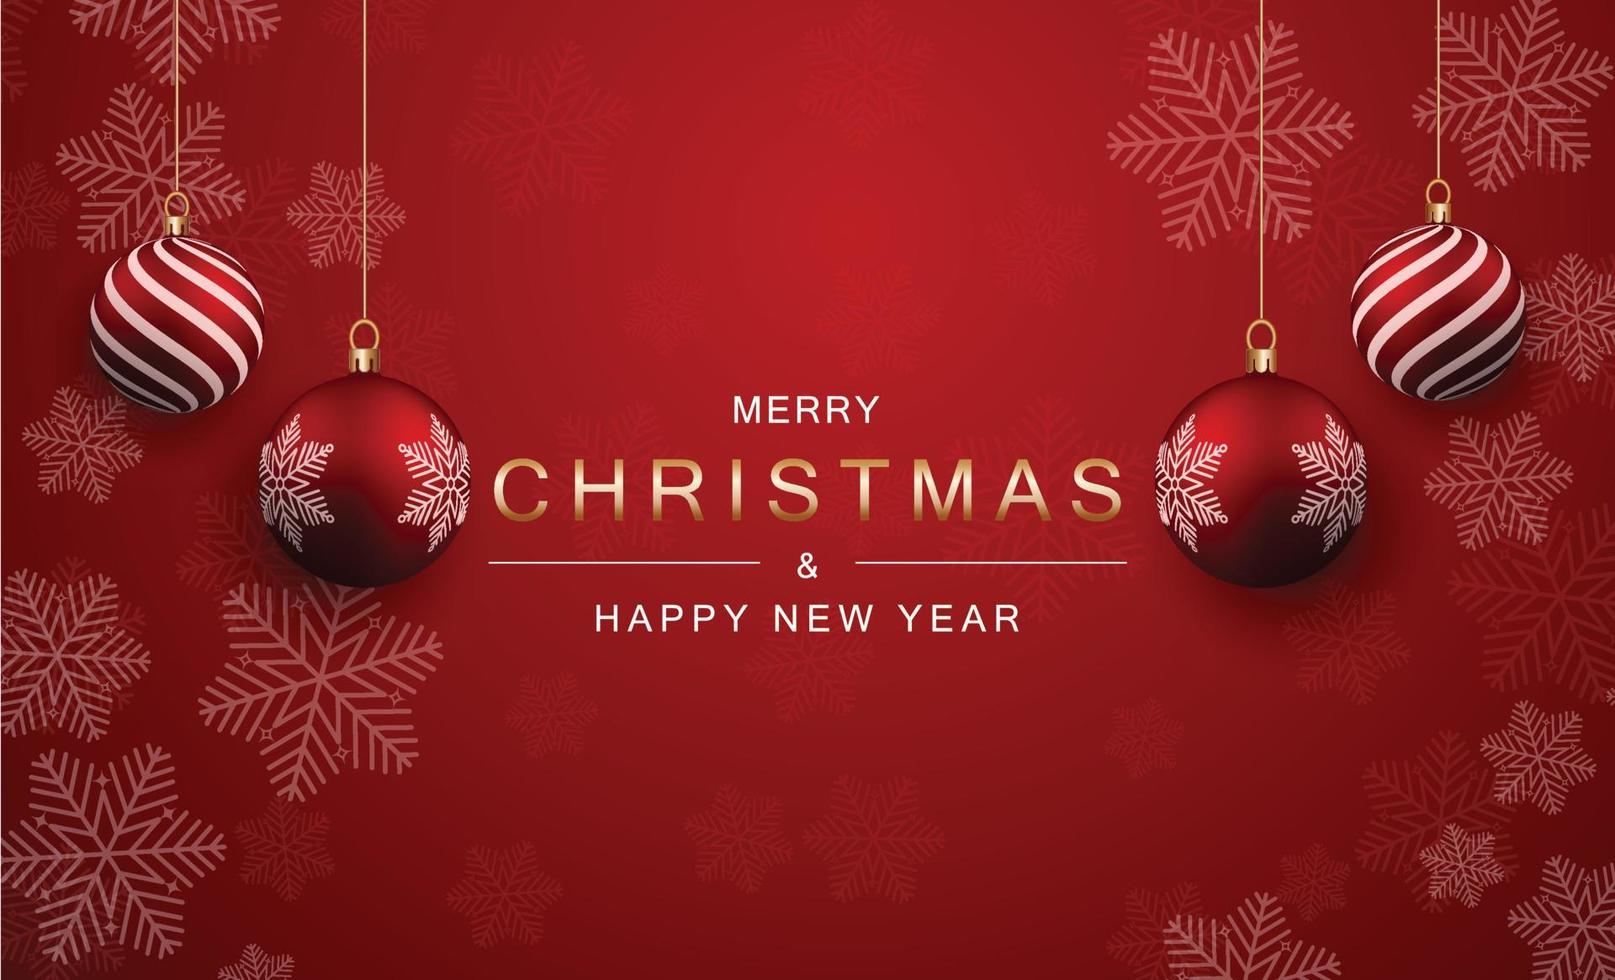 jul och ny år bakgrund med 4 realistisk jul bollar med skön vertikal Ränder och snöflingor isolerat på en djärv röd bakgrund. jul och ny år hälsning bakgrund begrepp. vektor